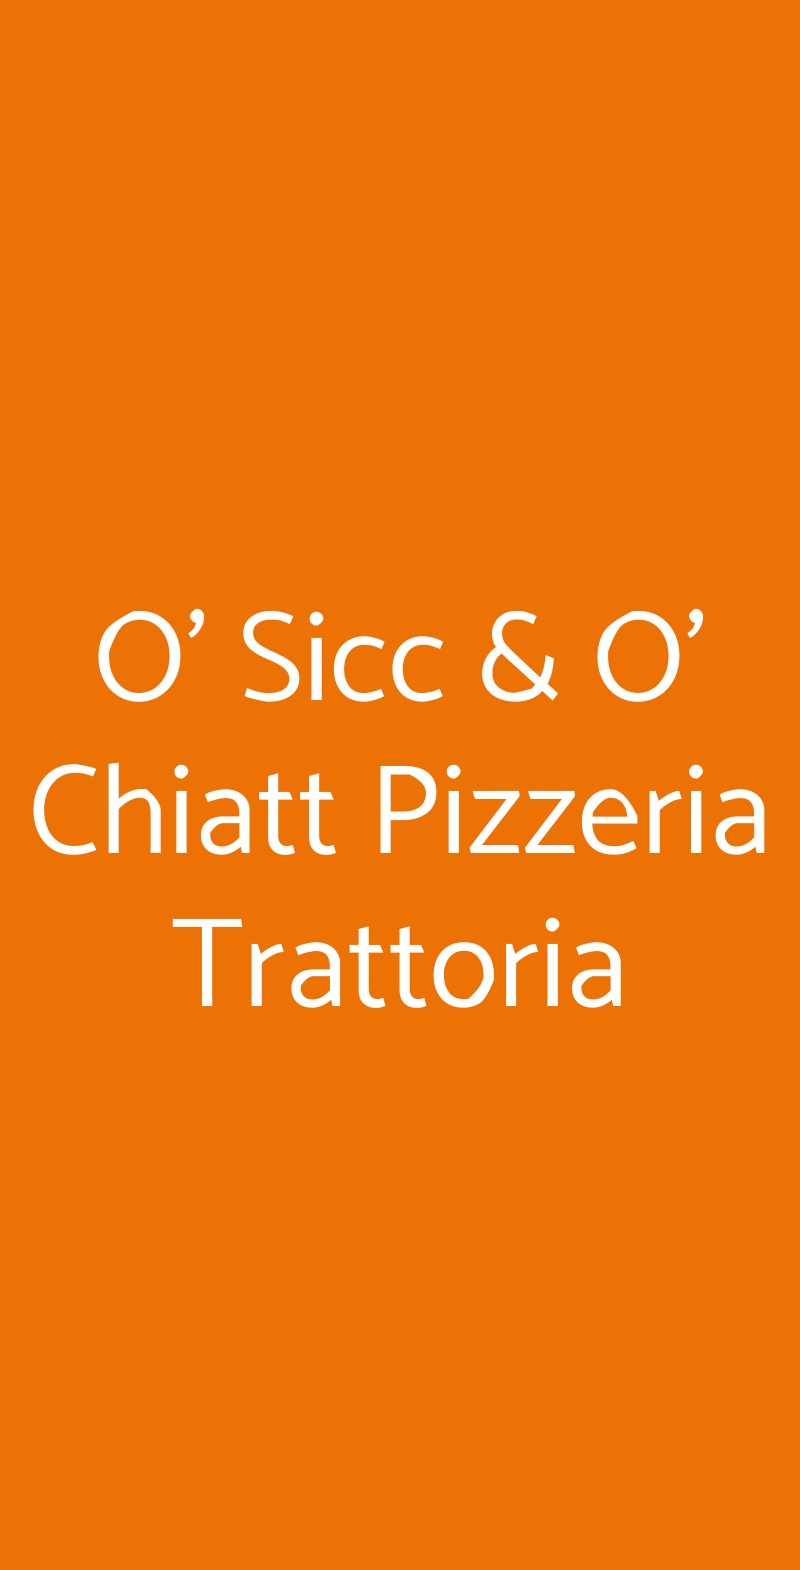 O' Sicc & O' Chiatt Pizzeria Trattoria Napoli menù 1 pagina